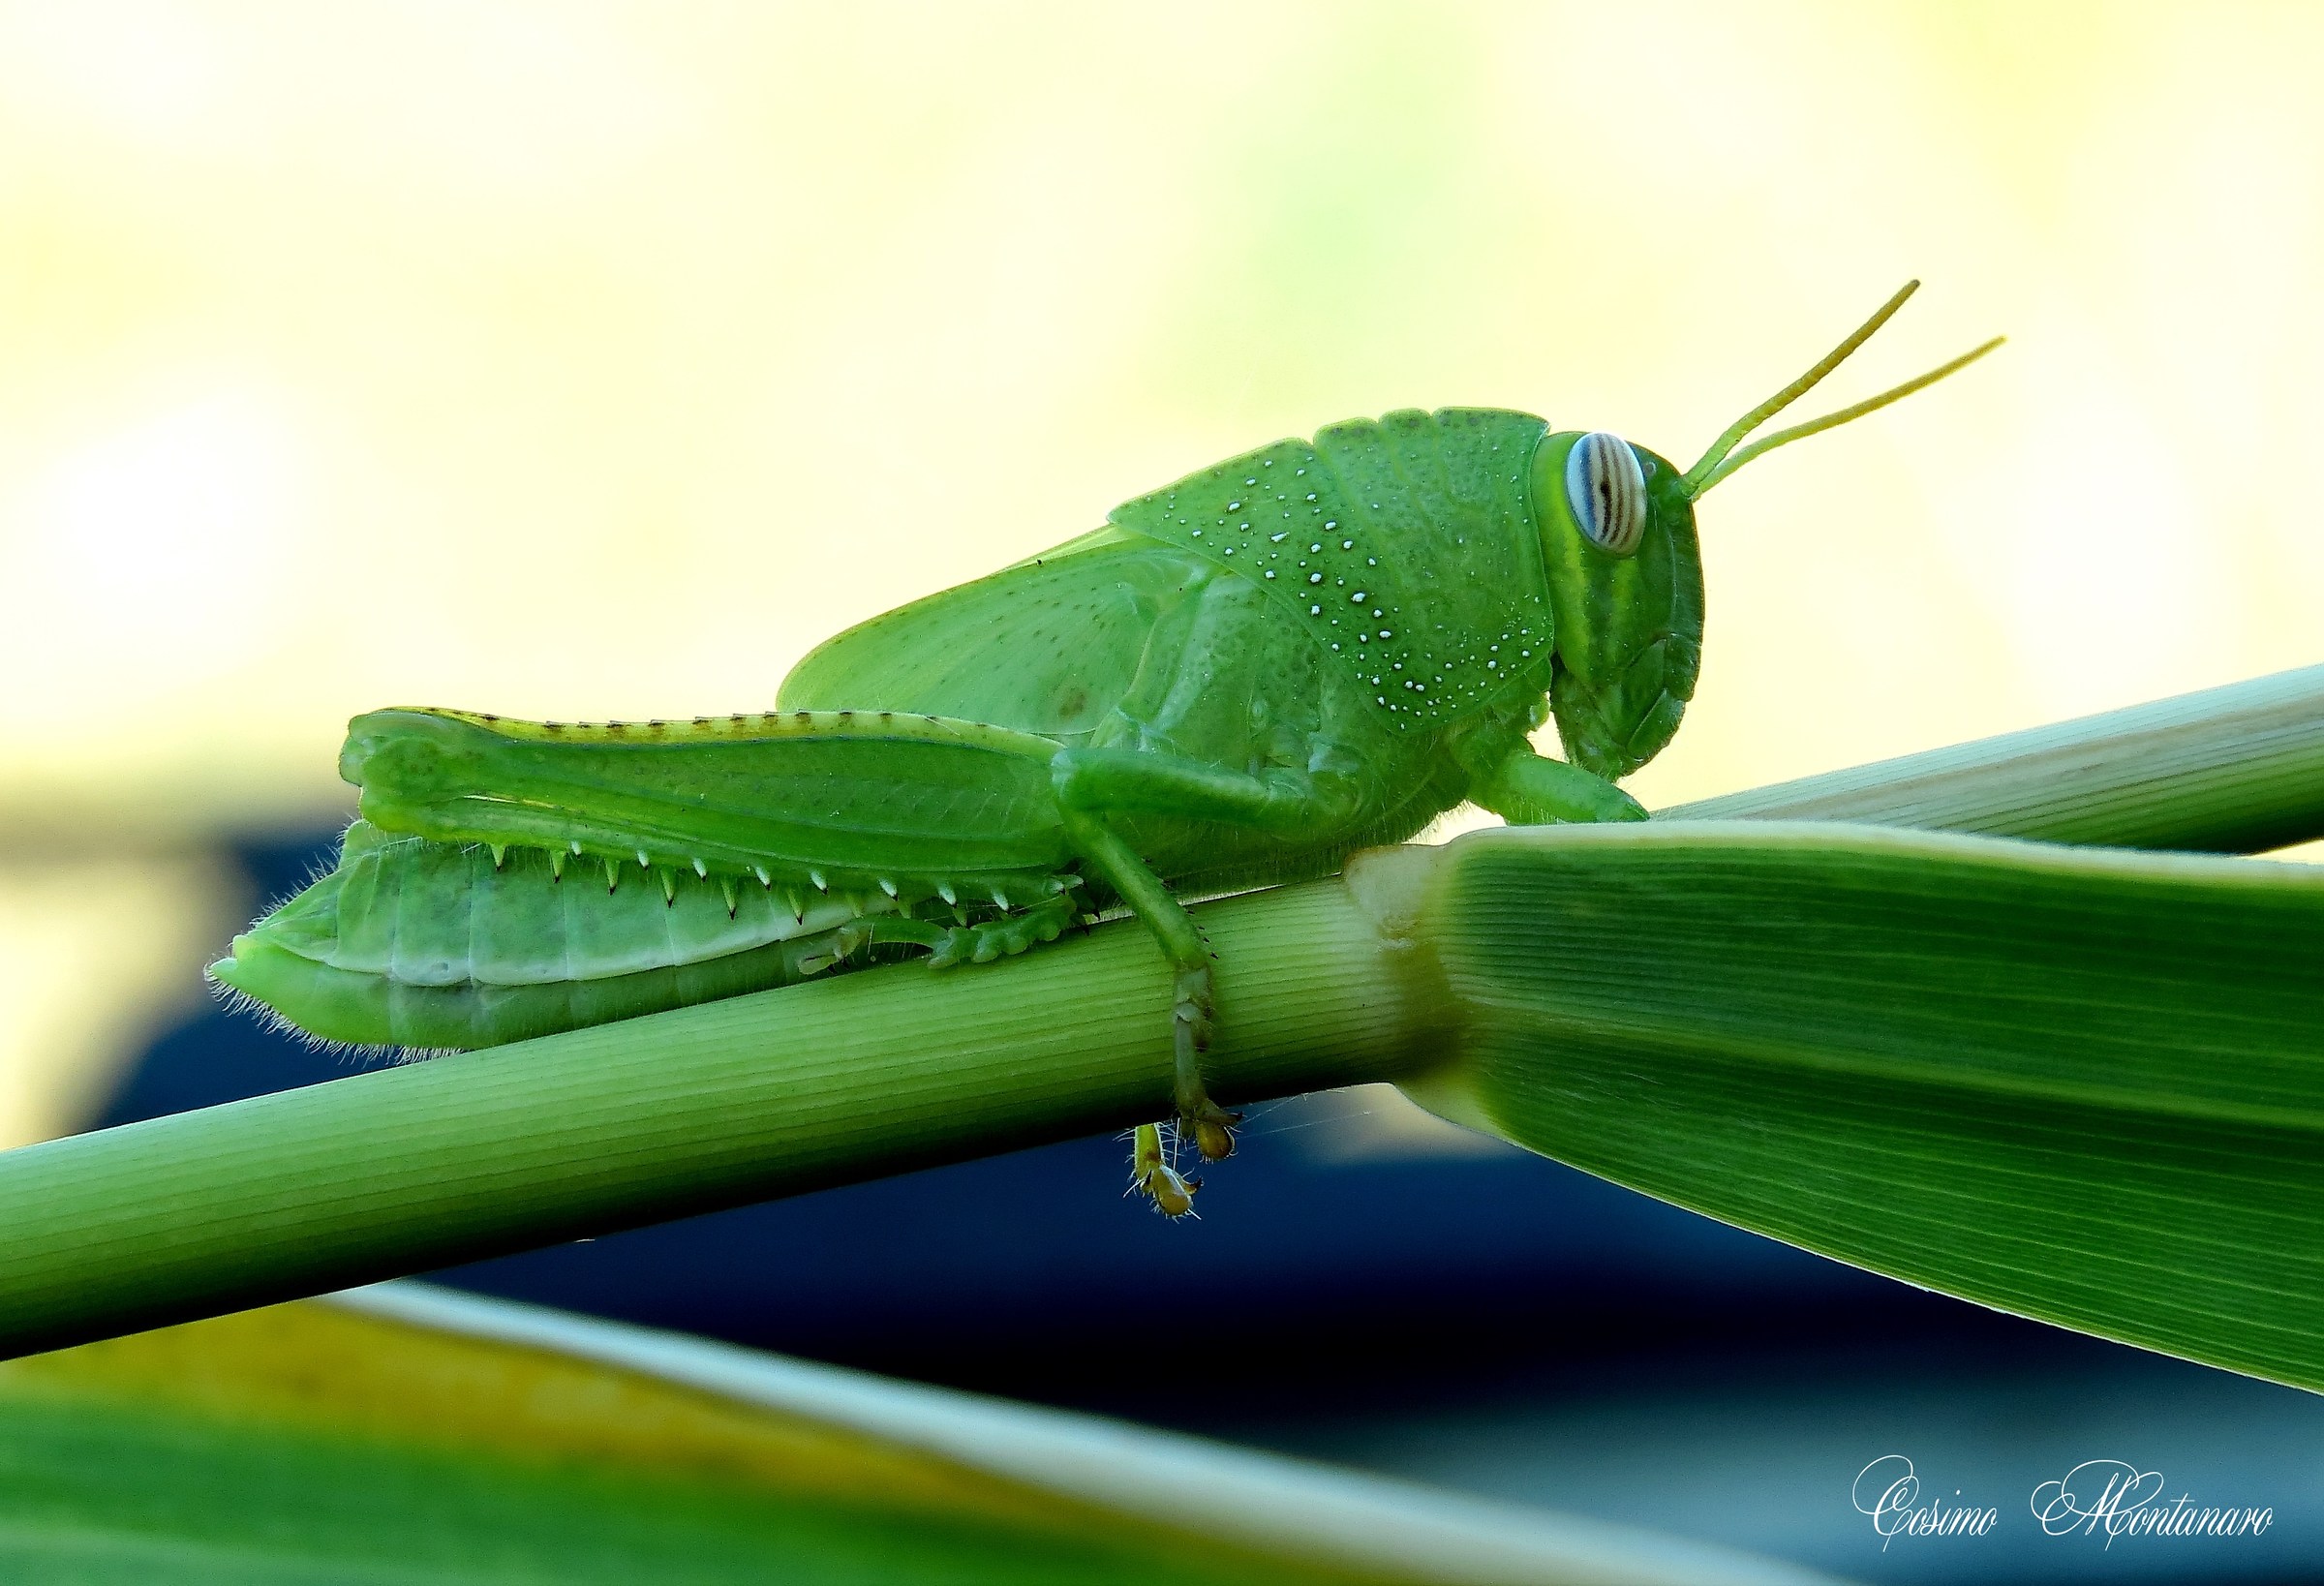 The Egyptian locust...